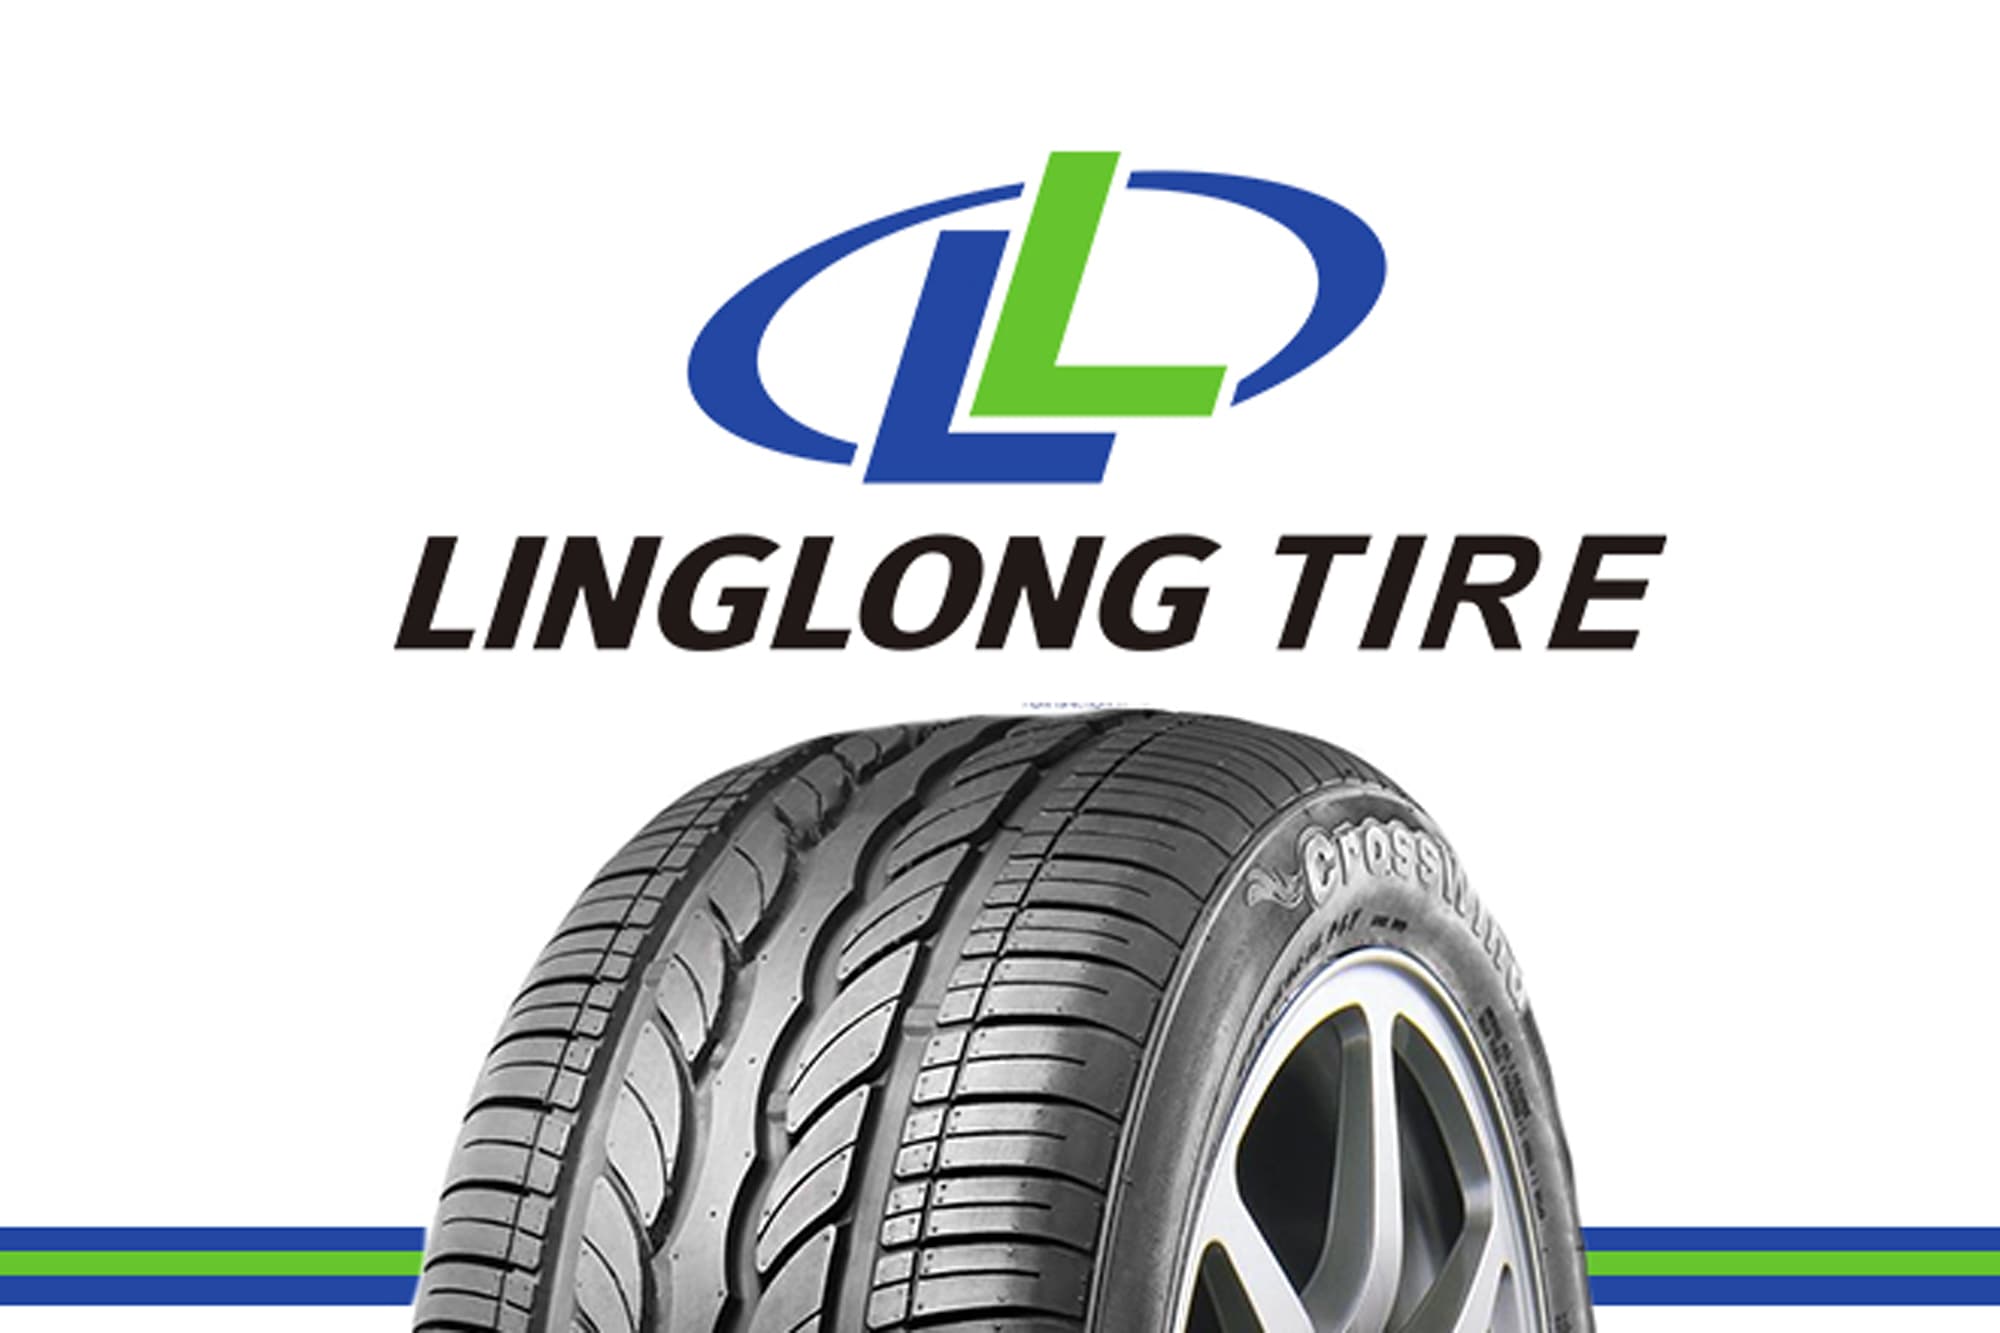 Linglong construirá una nueva planta de fabricación de neumáticos en las Américas